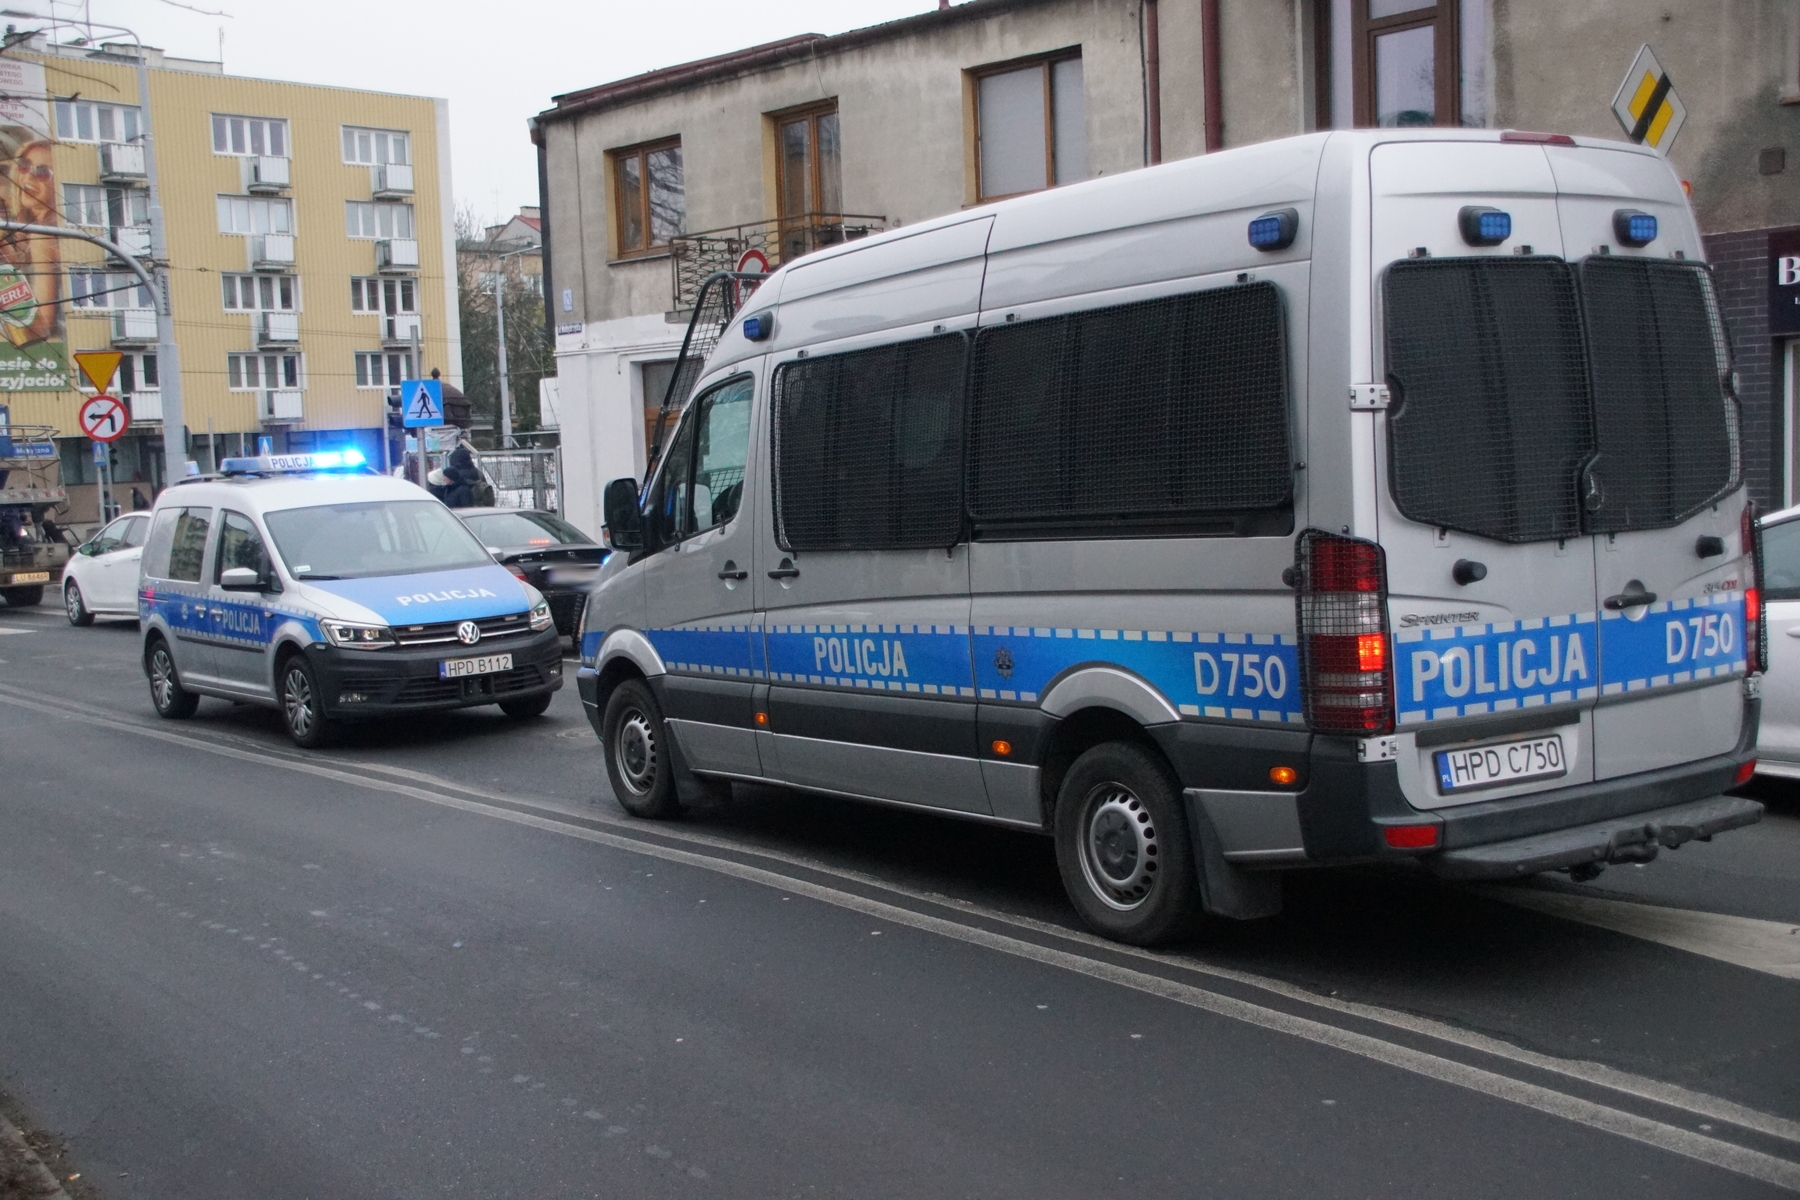 W trakcie policyjnego pościgu audi wypadło z jezdni i ścięło sygnalizator. Duże utrudnienia w ruchu na jednym ze skrzyżowań w Lublinie (zdjęcia)